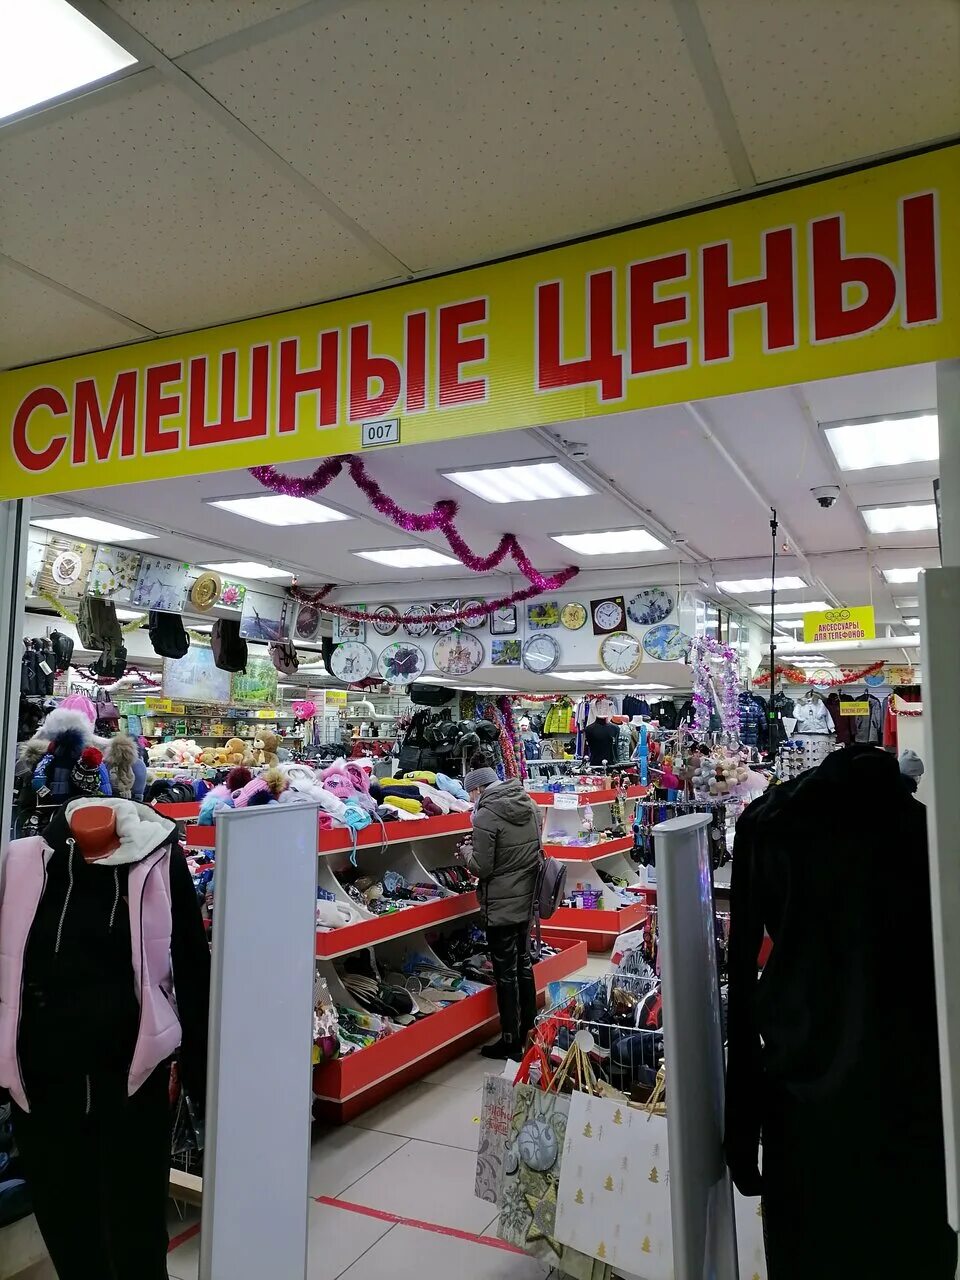 Где подешевле стоит в москве. Смешные цены. Смешные магазины. Магазин смешной одежды. Смешной магазин одежды обуви.